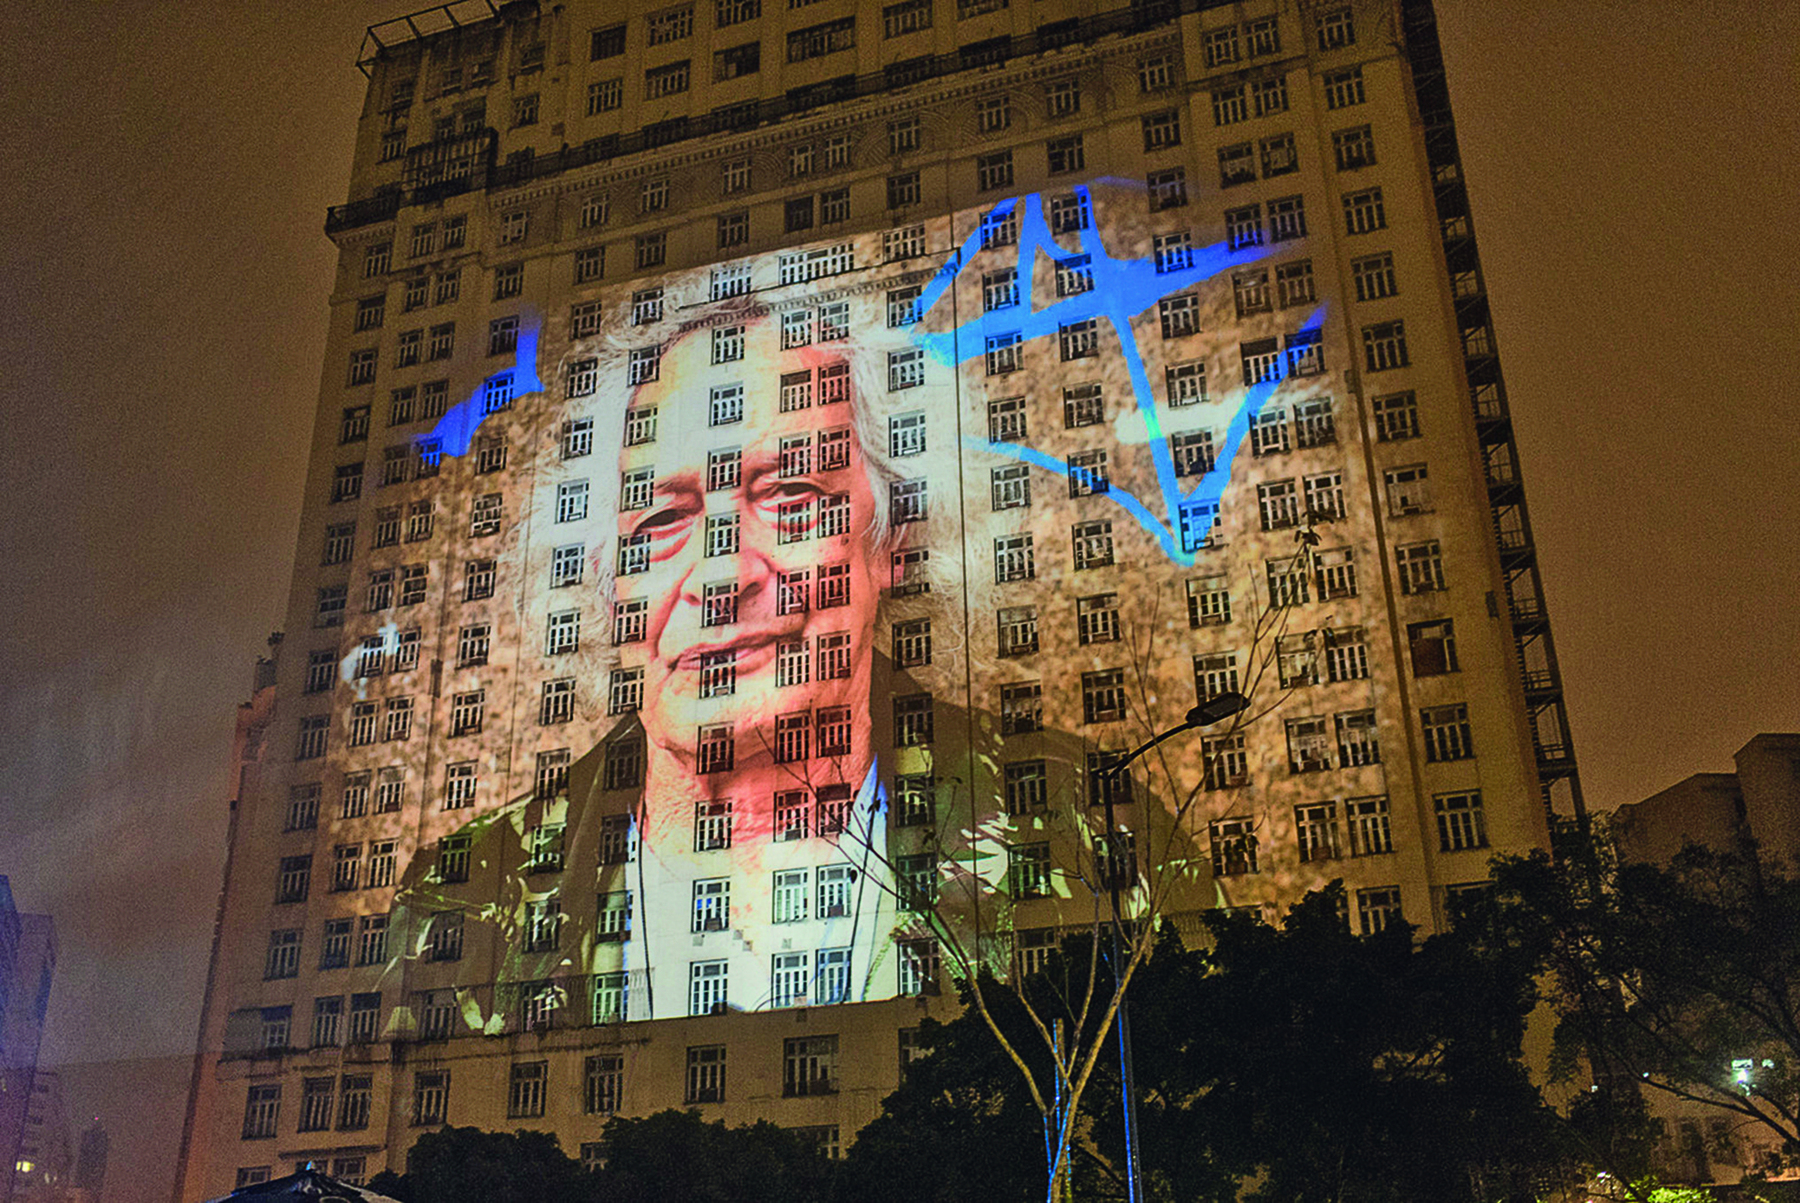 Fotografia. Projeção do rosto de uma pessoa na fachada de um prédio alto durante o período noturno. Trata-se de um homem idoso de cabelo grisalho, vestido com uma camiseta branca e um casaco preto.